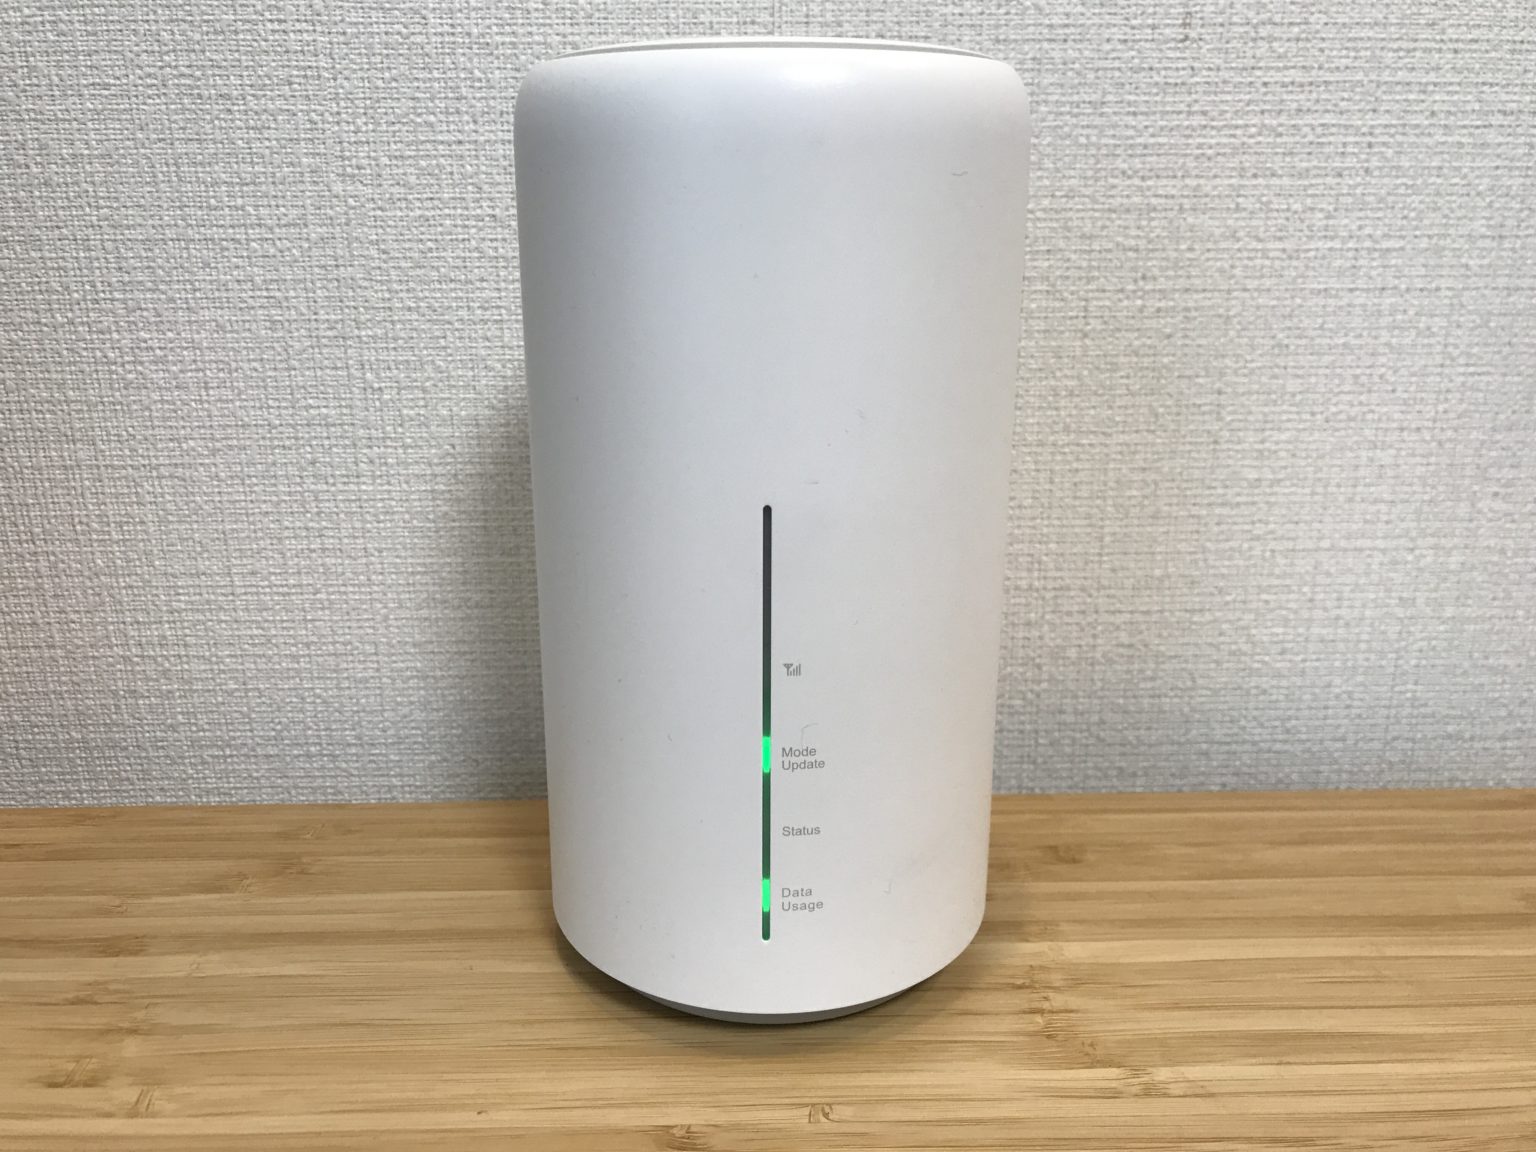 私がSpeed Wifi home L02を解約した理由【手軽だけど容量が足りない】 - ステキなブログ